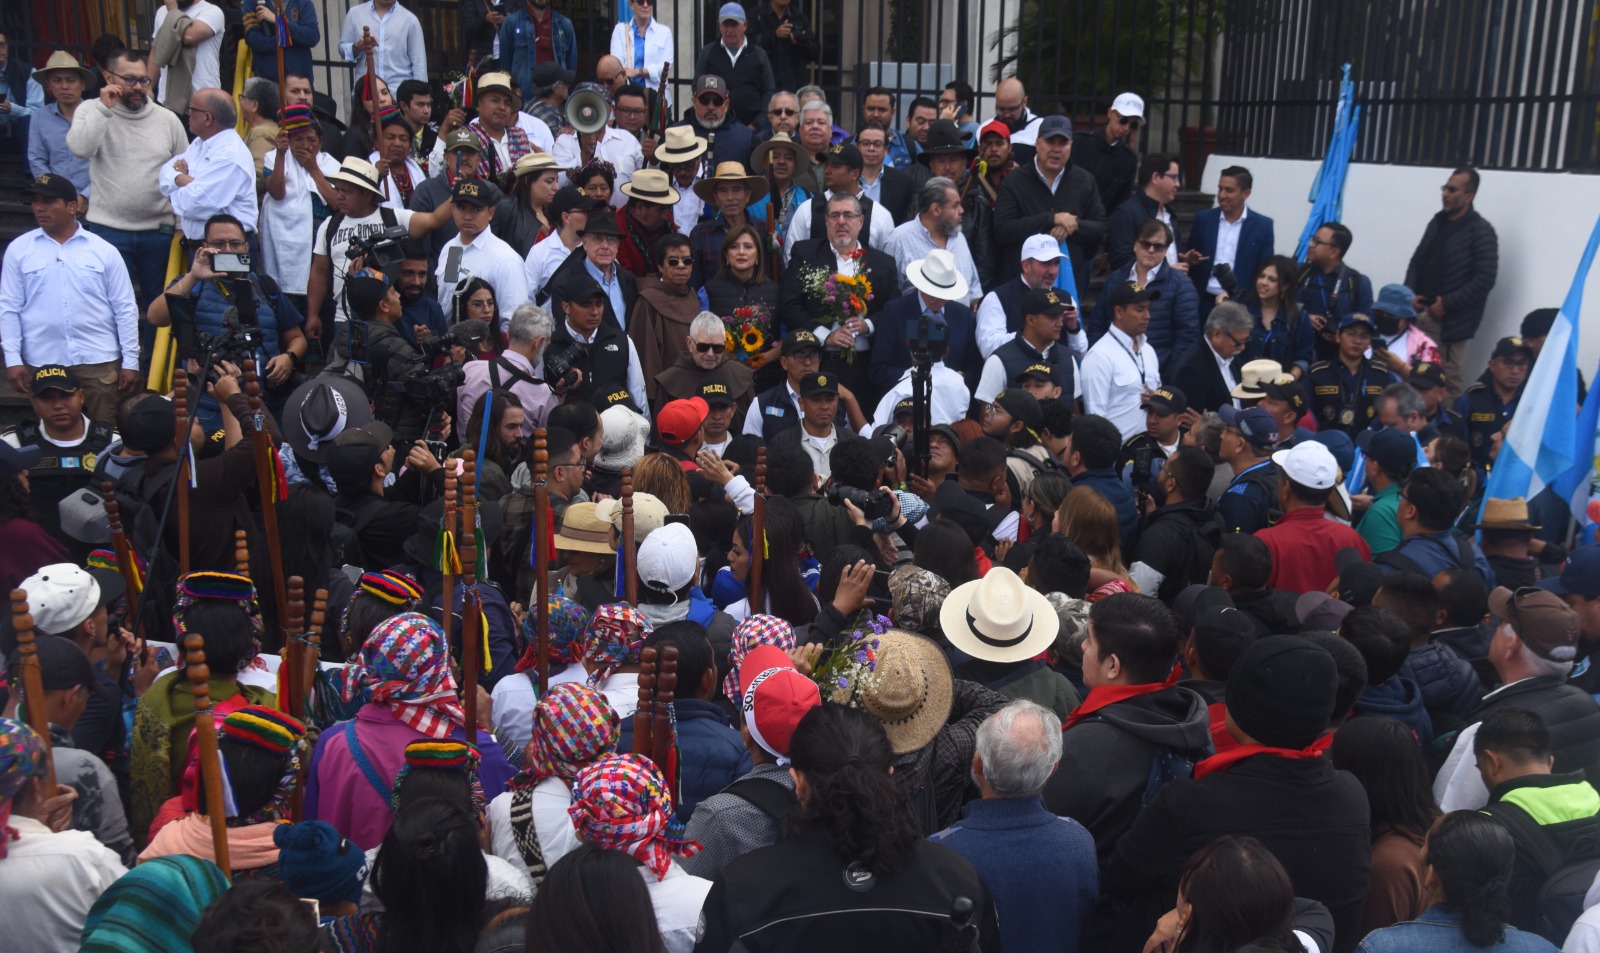 marcha en defensa de la democracia, participan Bernardo Arévalo, Karin Herrera y líderes indígenas